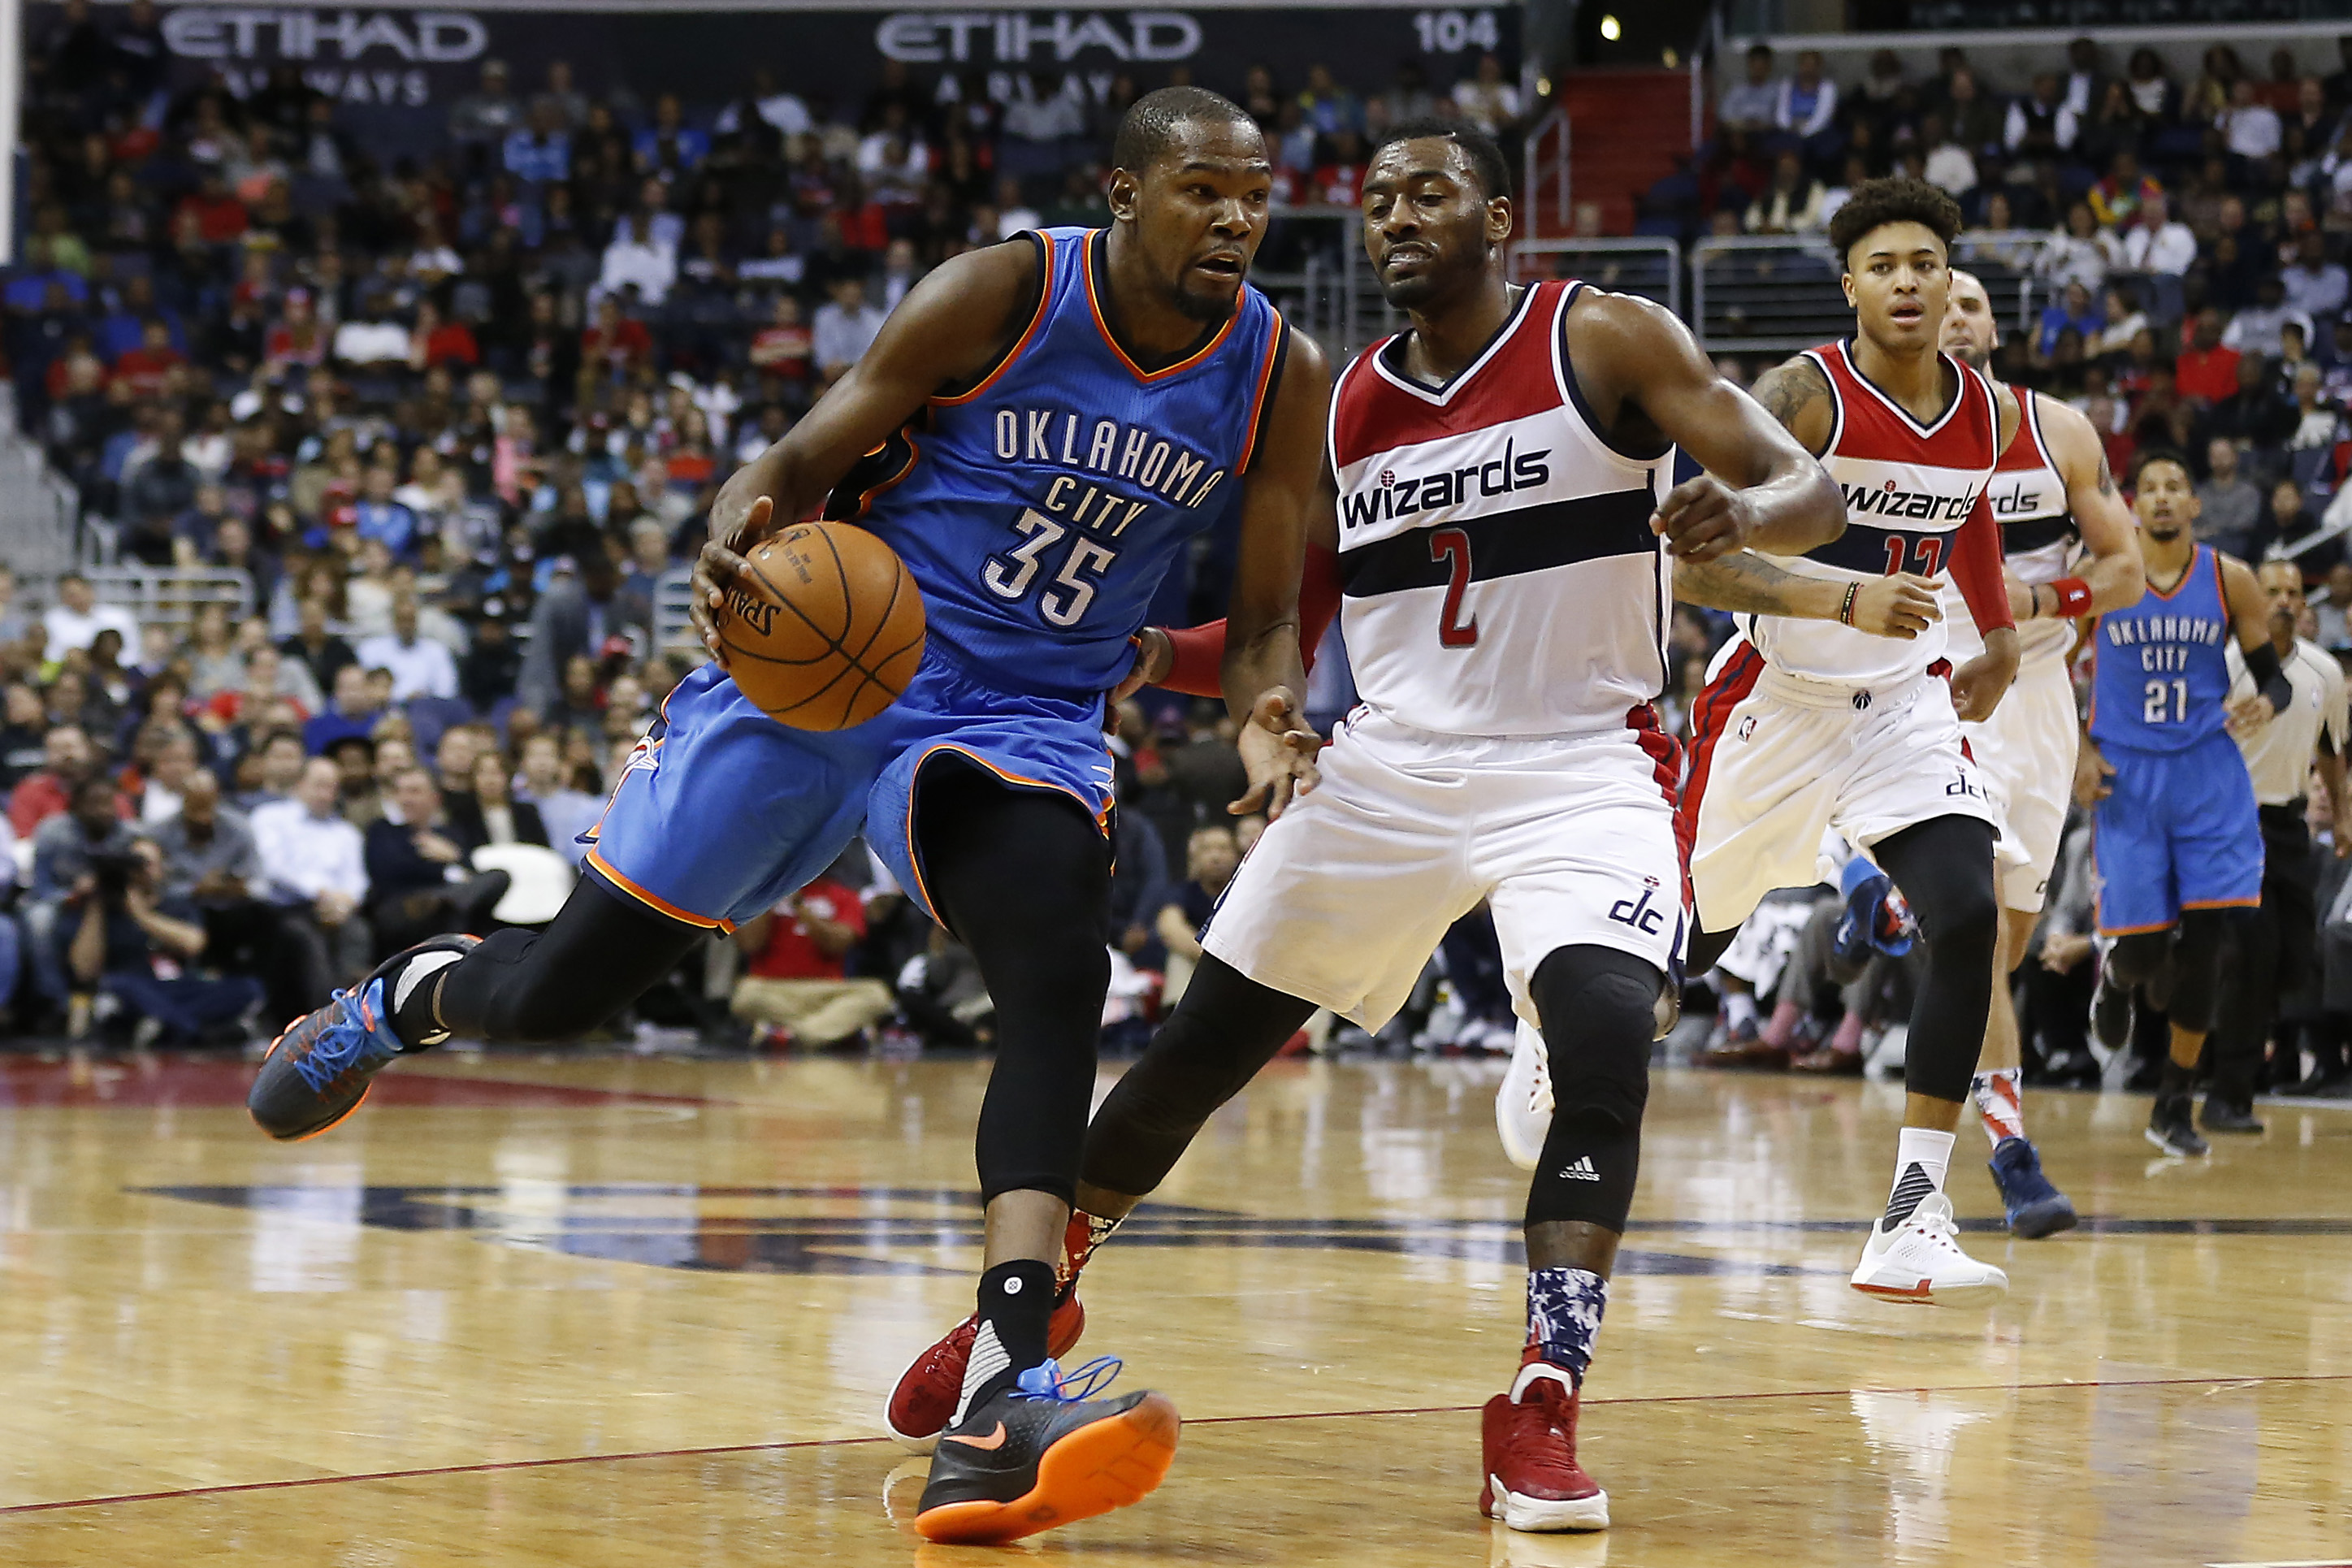 NBA: Oklahoma City Thunder at Washington Wizards